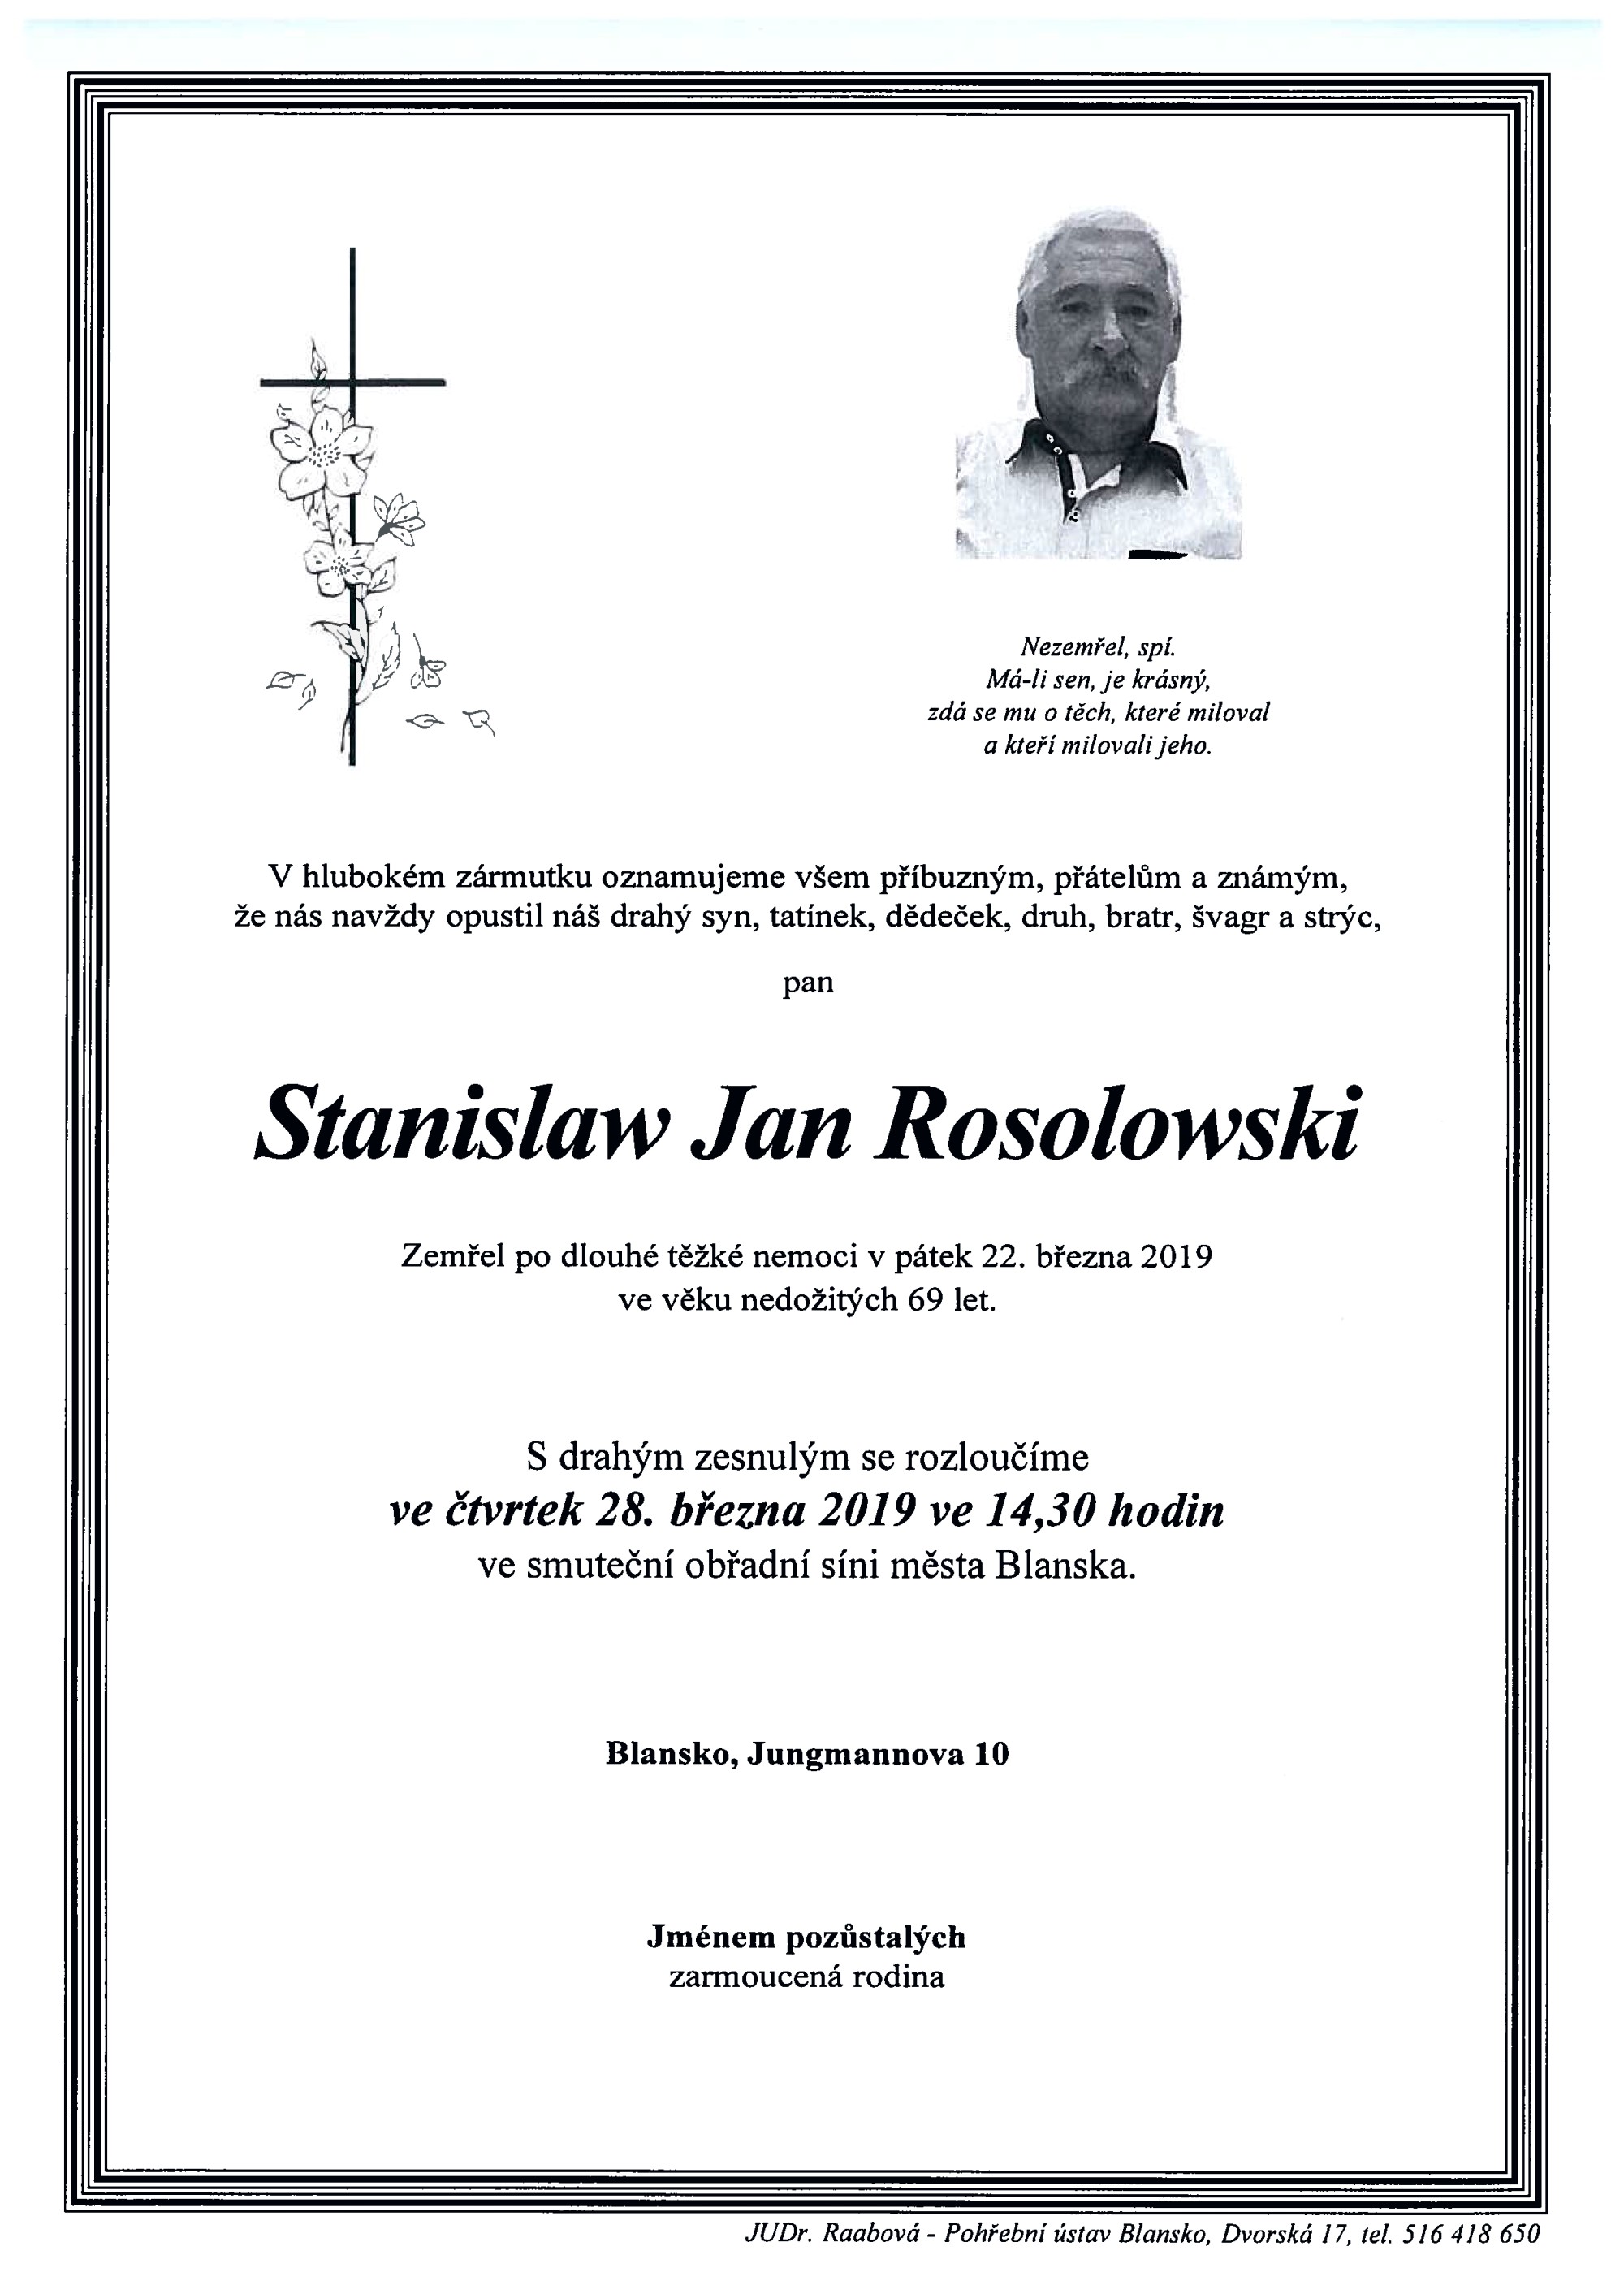 Stanislaw Jan Rosolowski